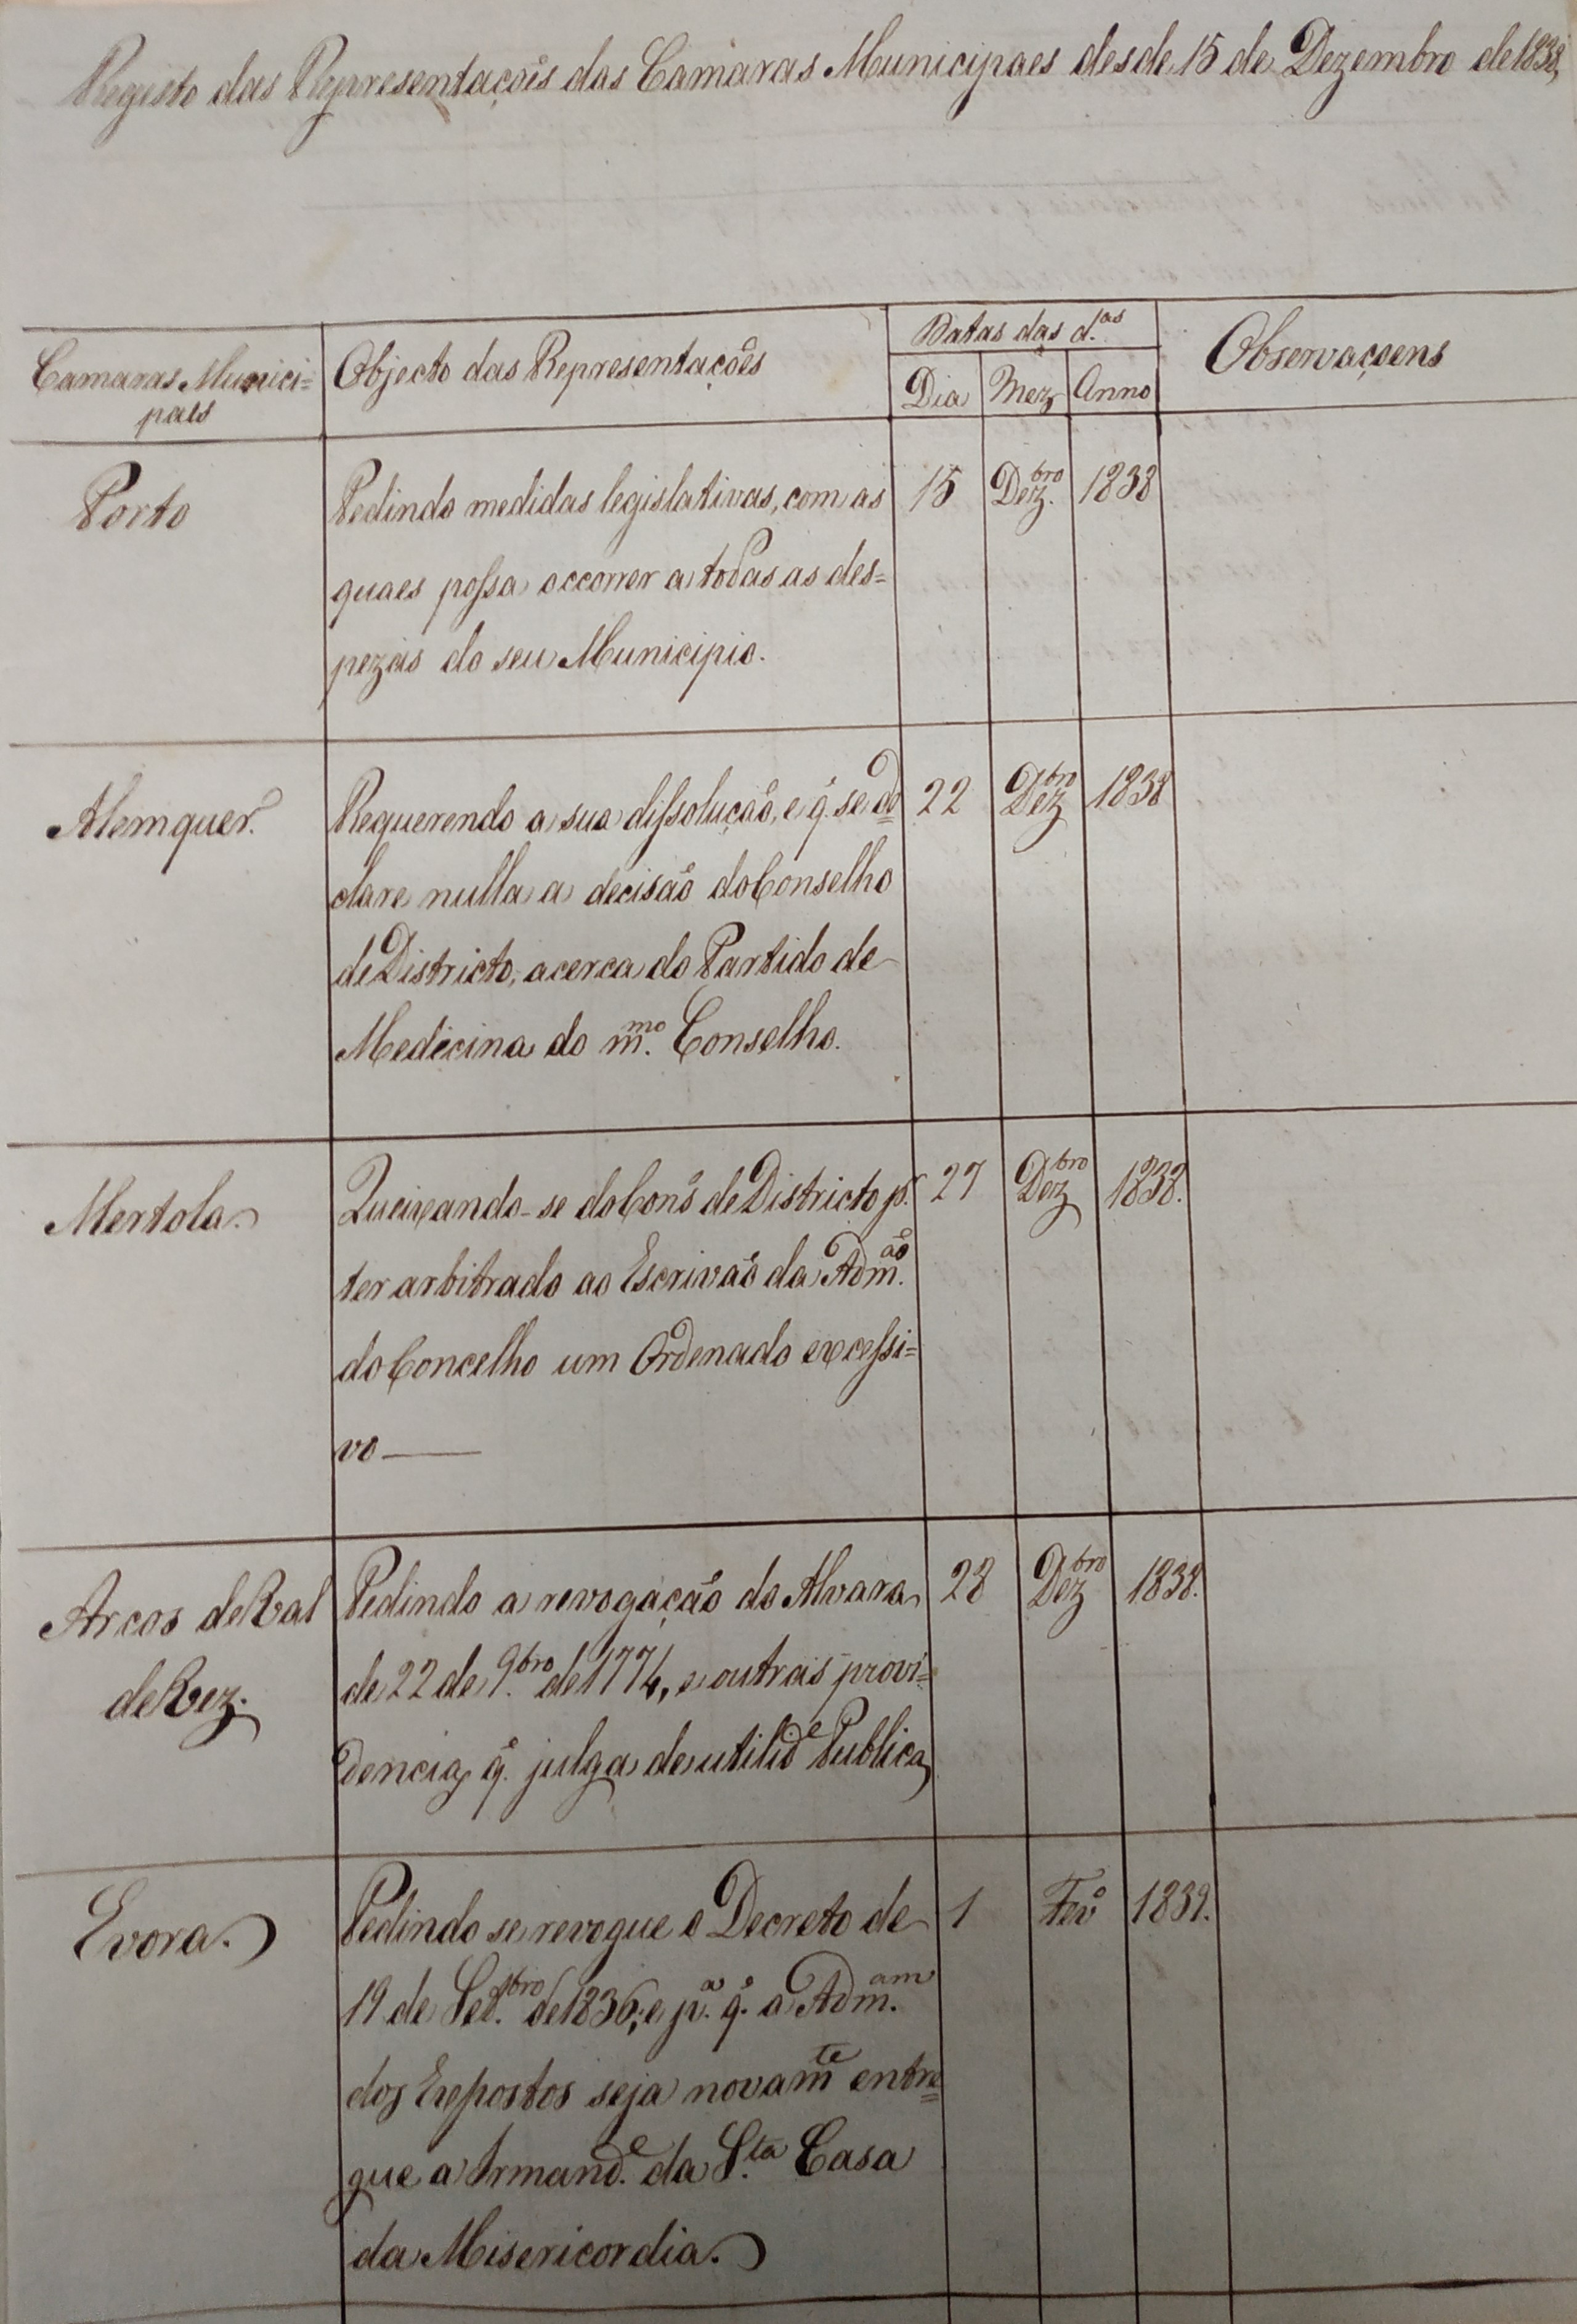 Registo (de 1841) das Representações das Câmaras Municipais desde 15 de dezembro de 1838. Cota: Secção I/II, cx. 273, mç. 208, doc. 1